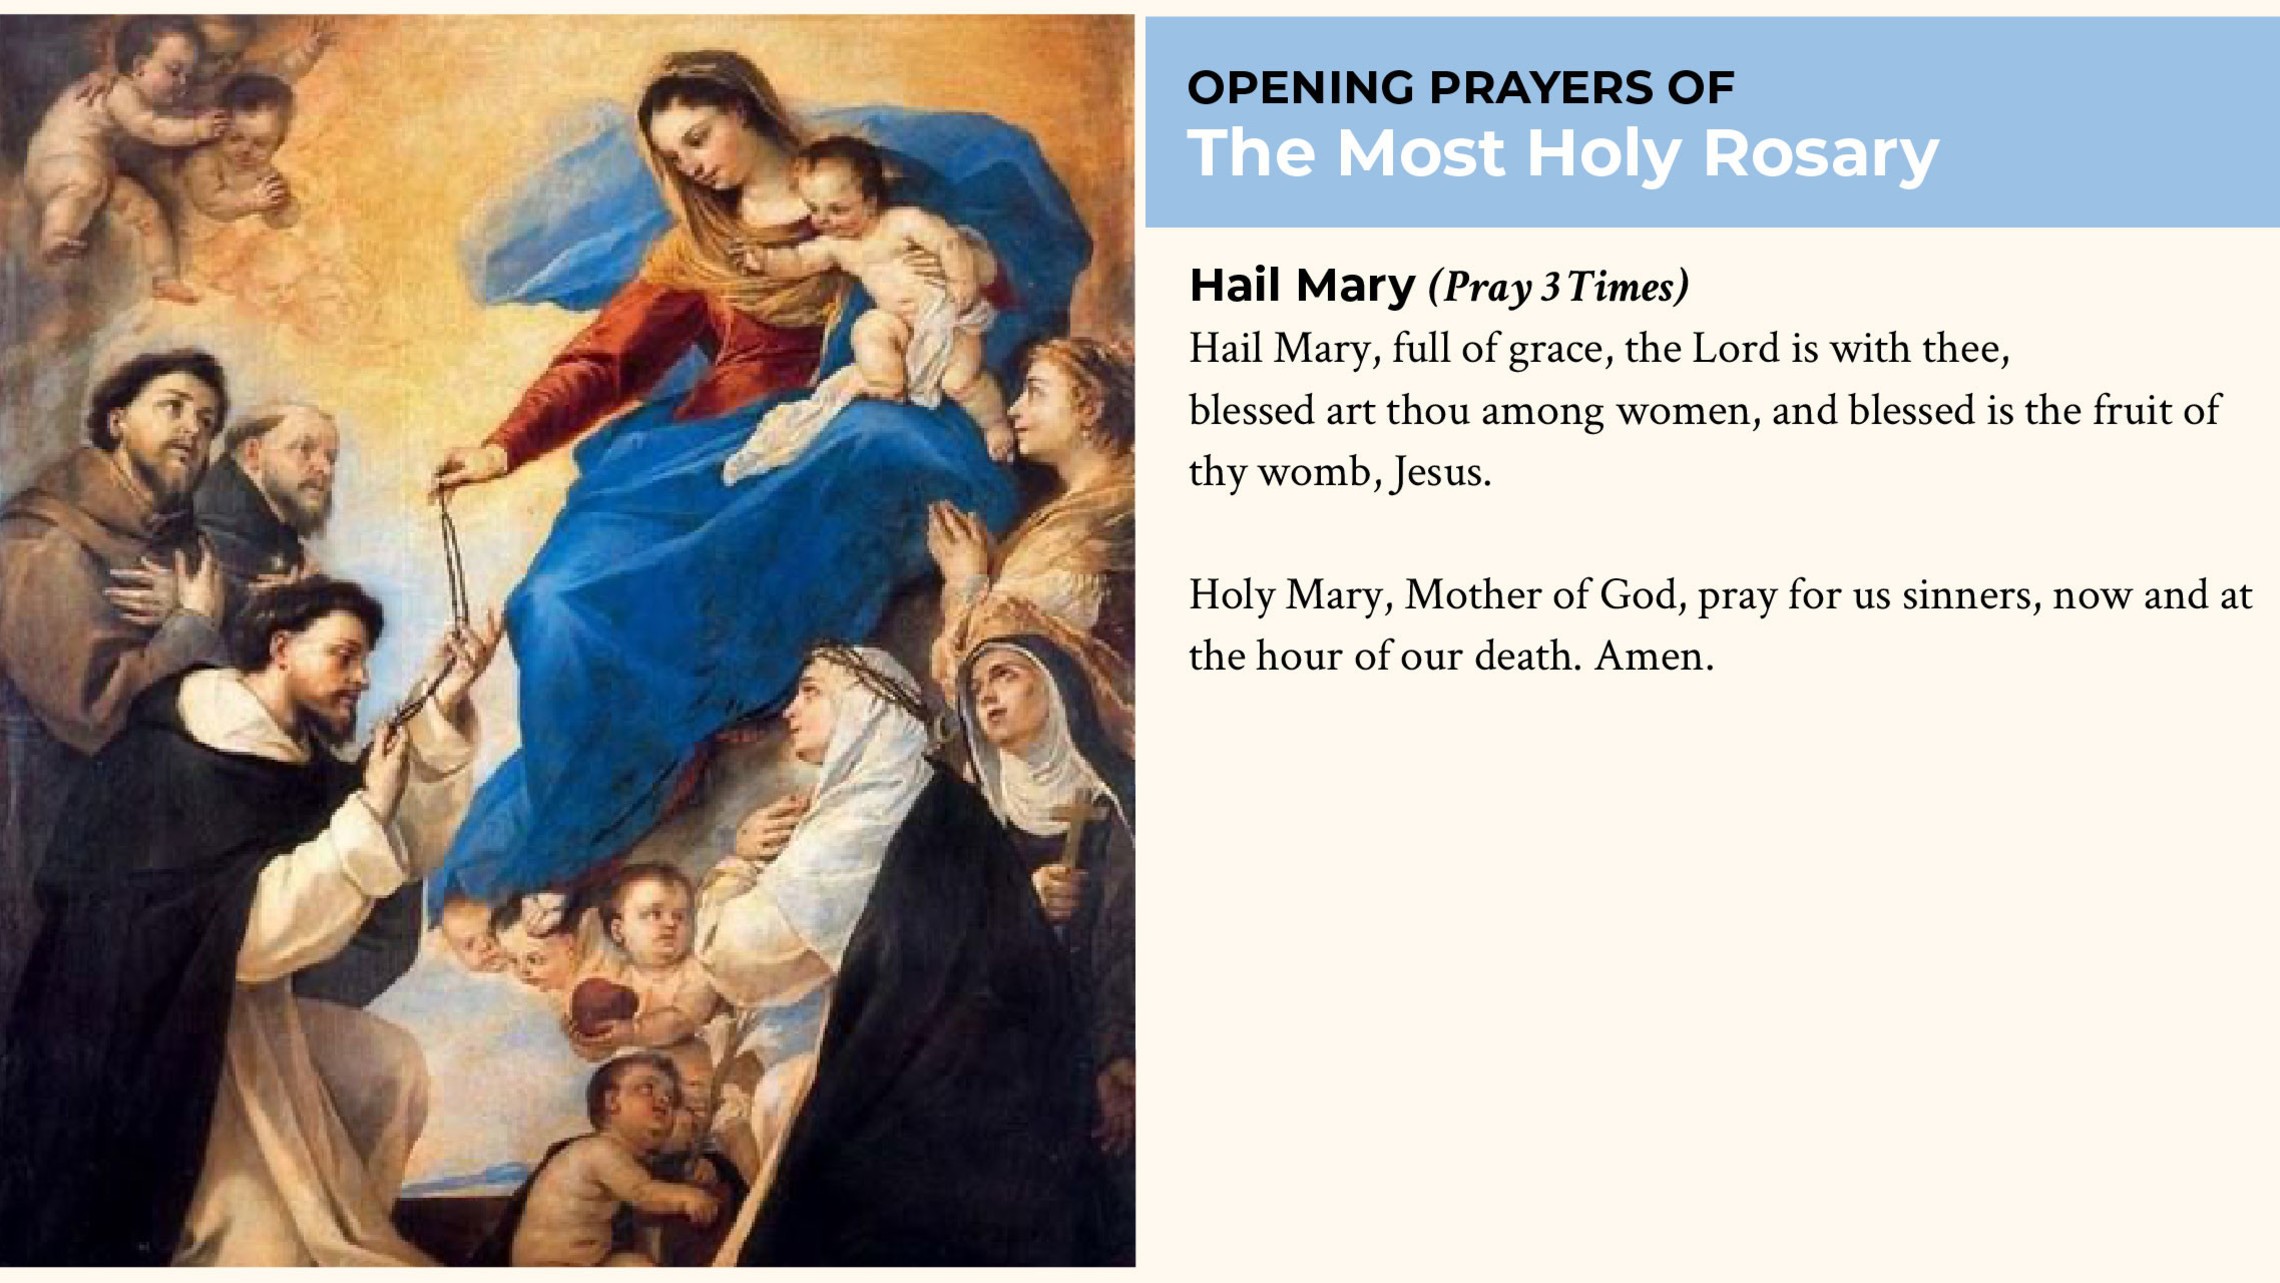 Pray three Hail Marys